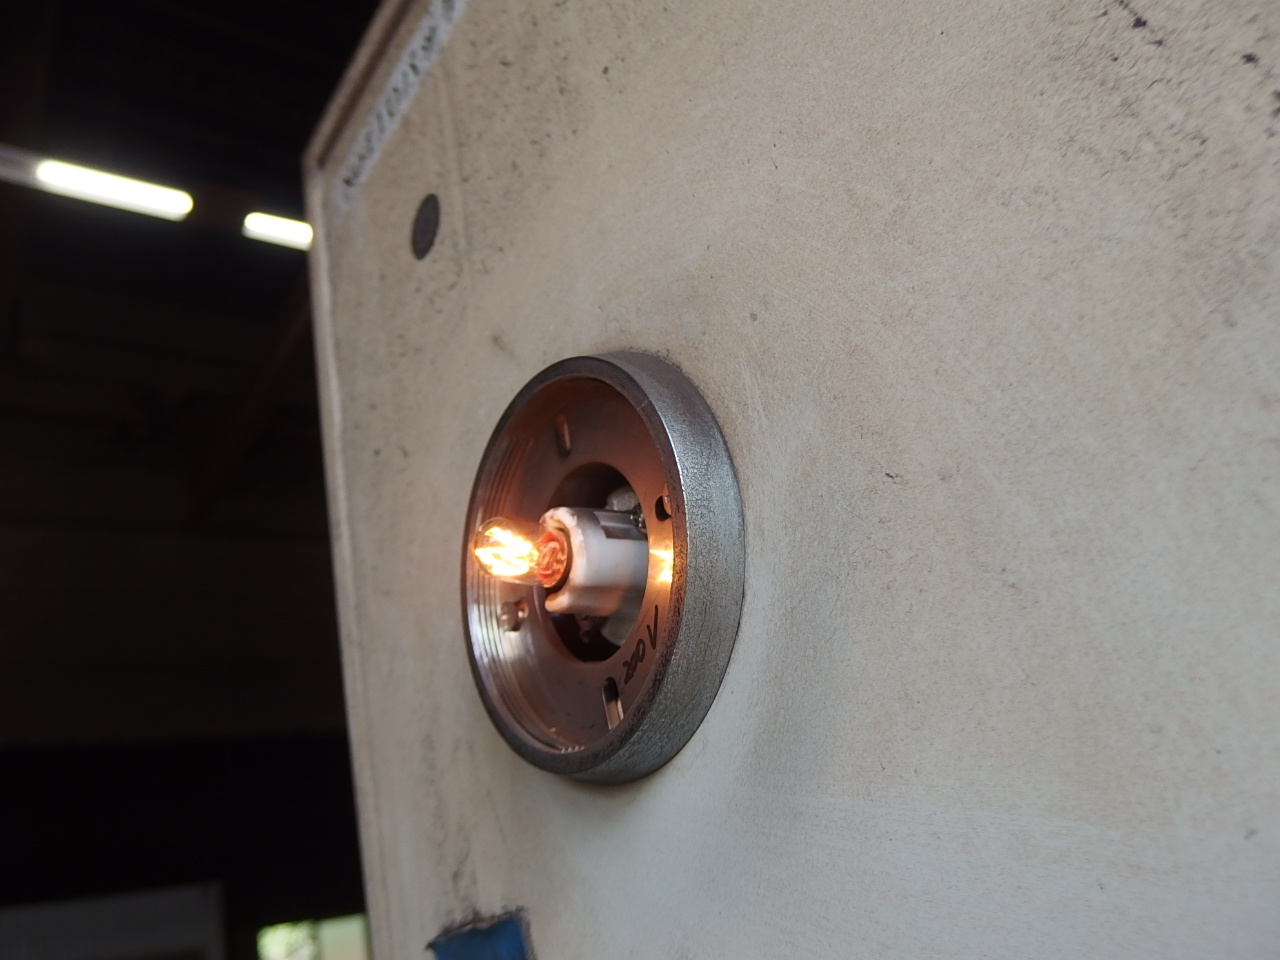 移動式粉末消火設備表示灯ランプ交換 画像2